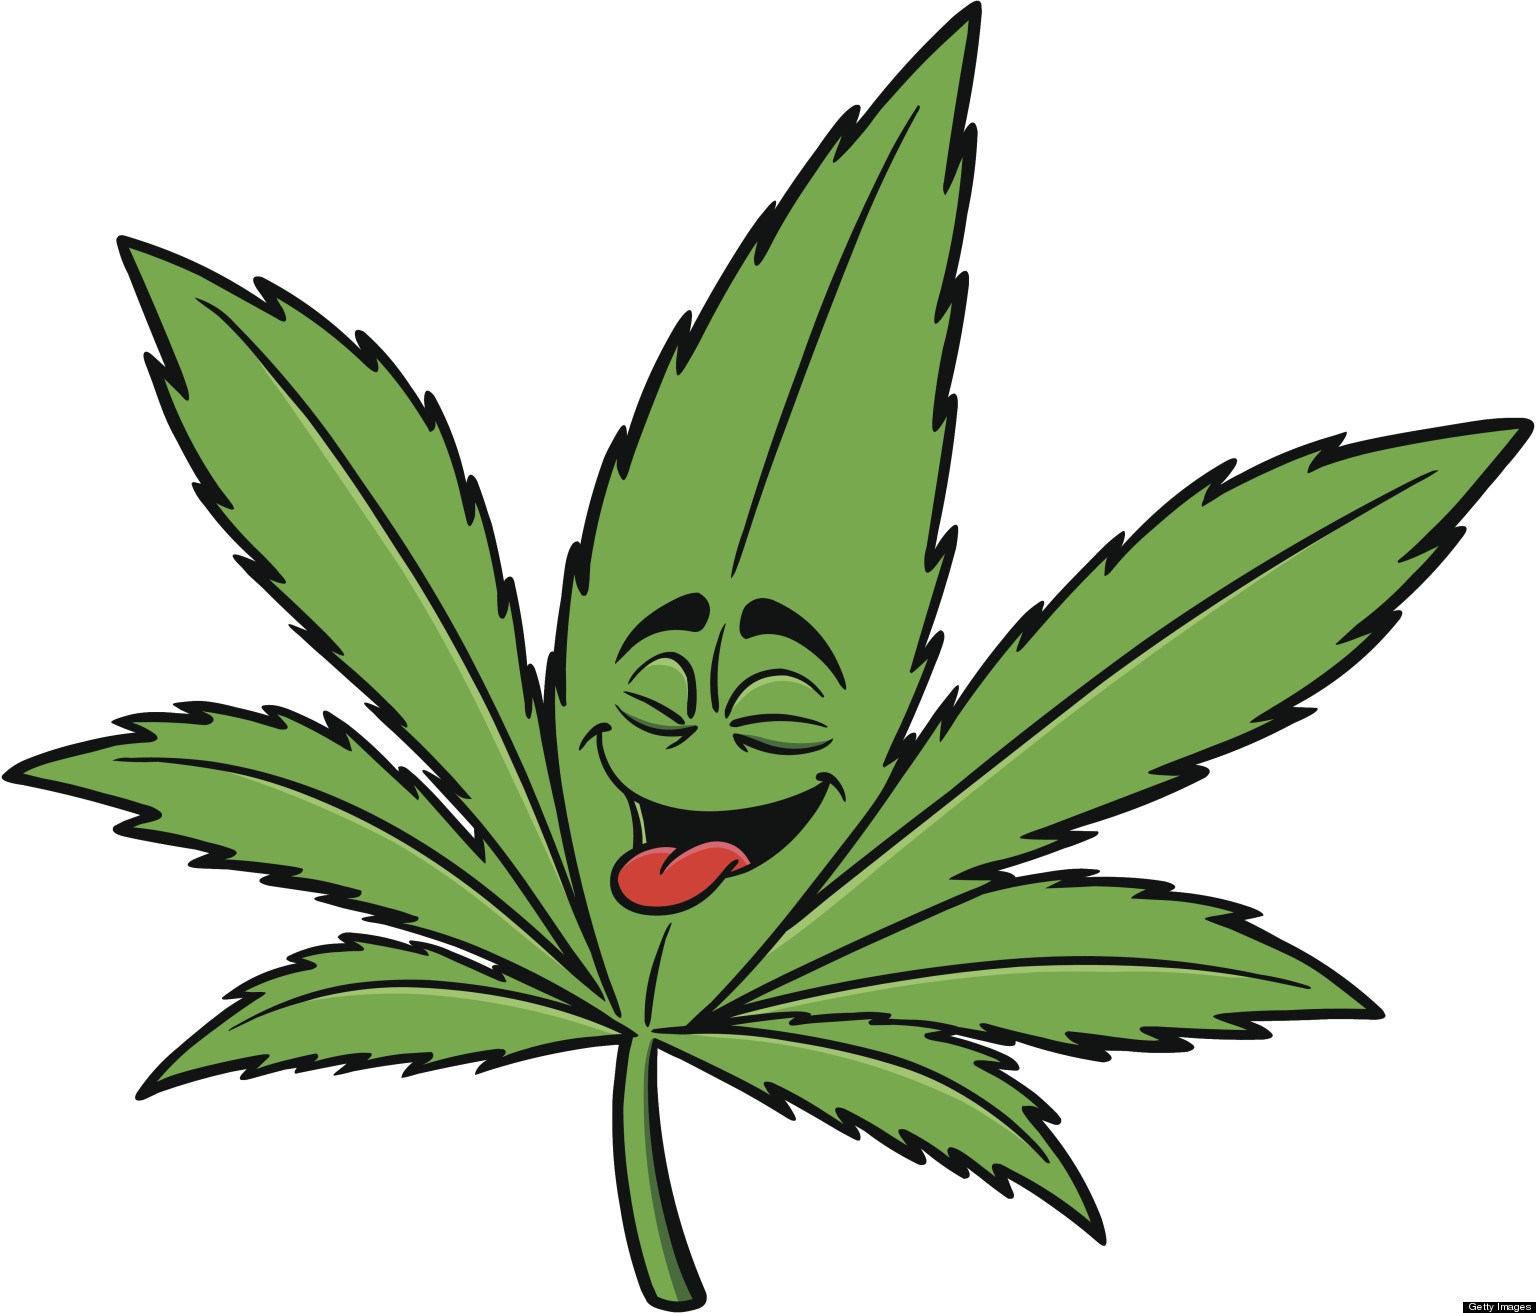 Cannabis Leaf clip art